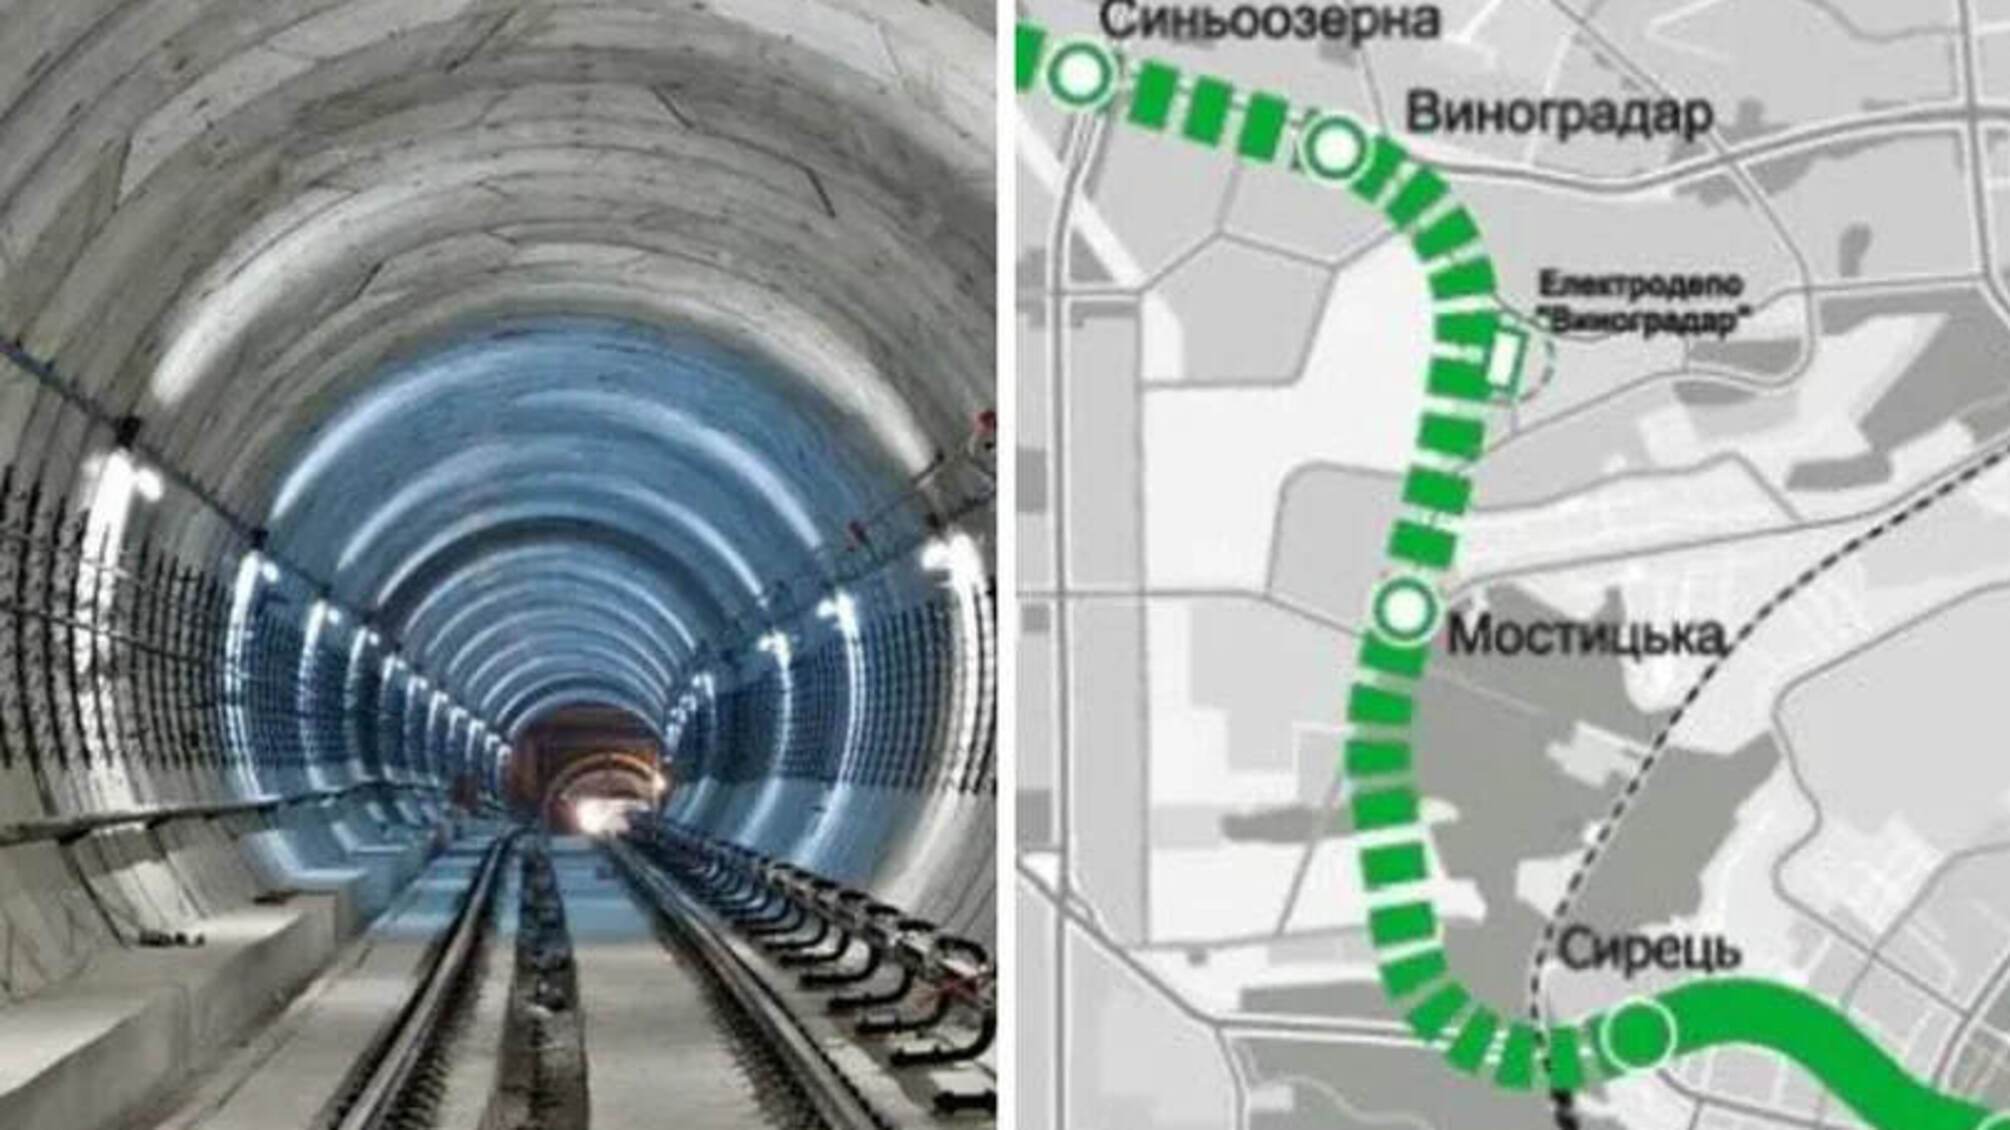 метро на Виногардар